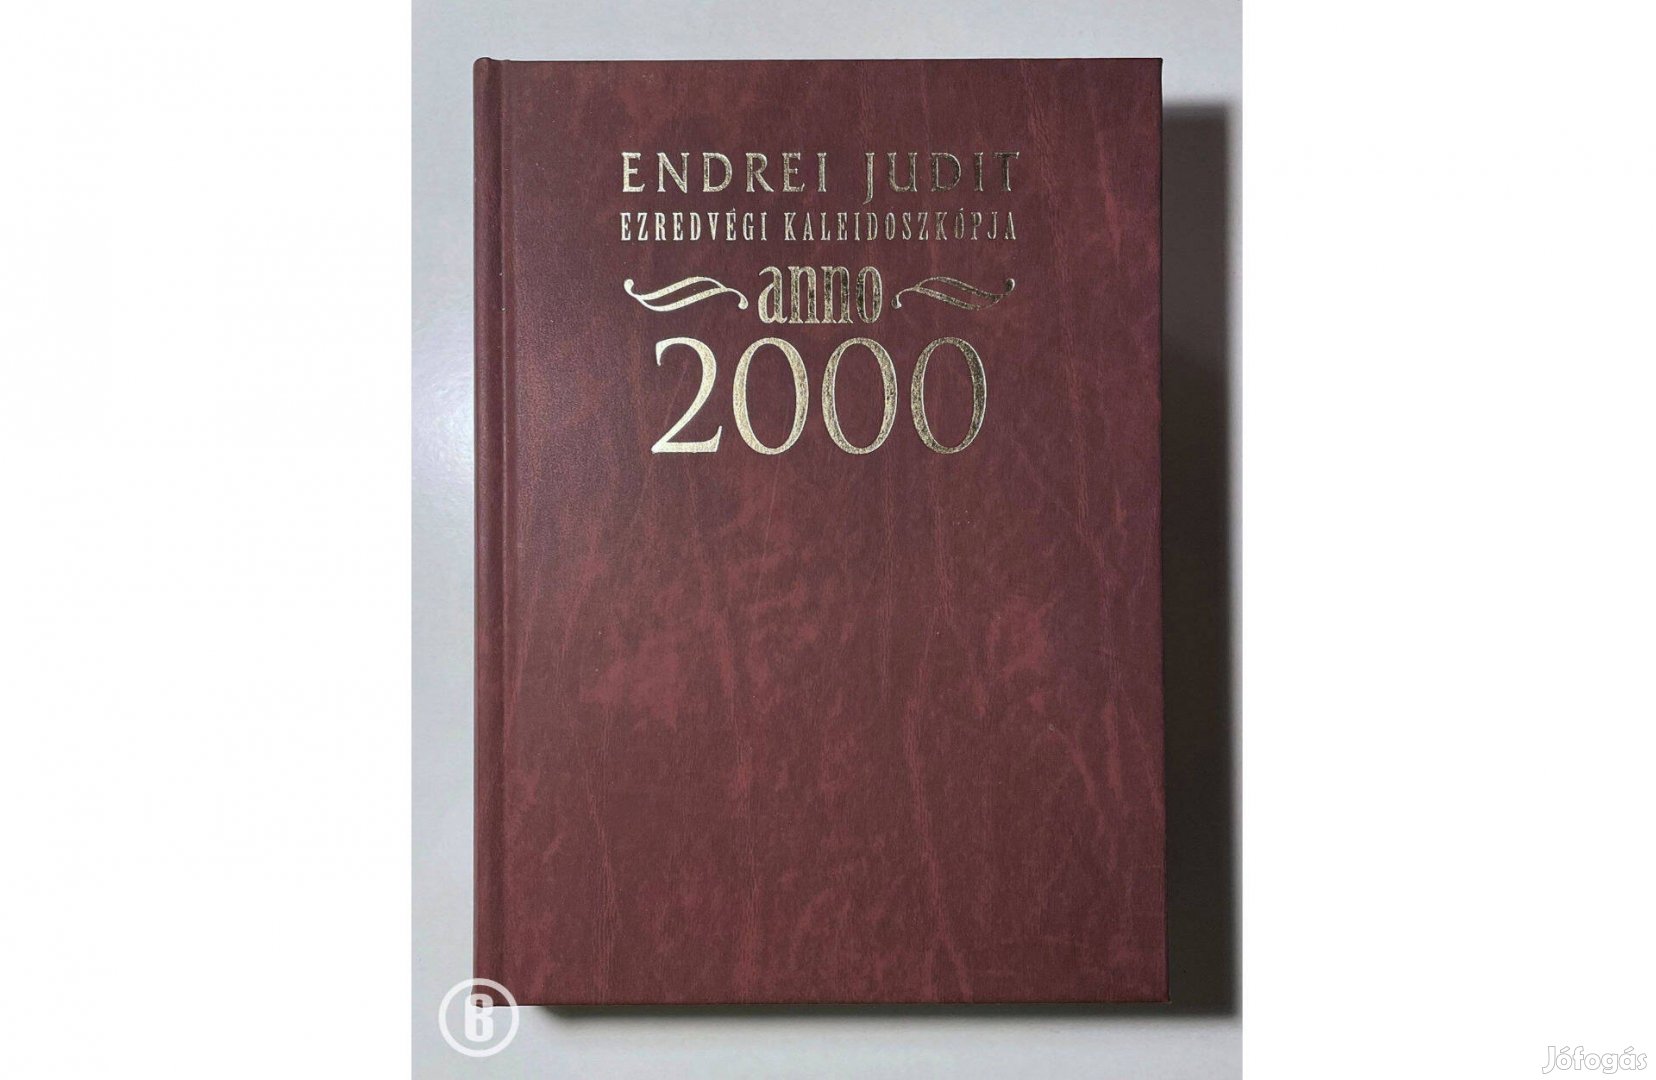 Endrei Judit: Ezredvégi kaleidoszkópja - anno 2000